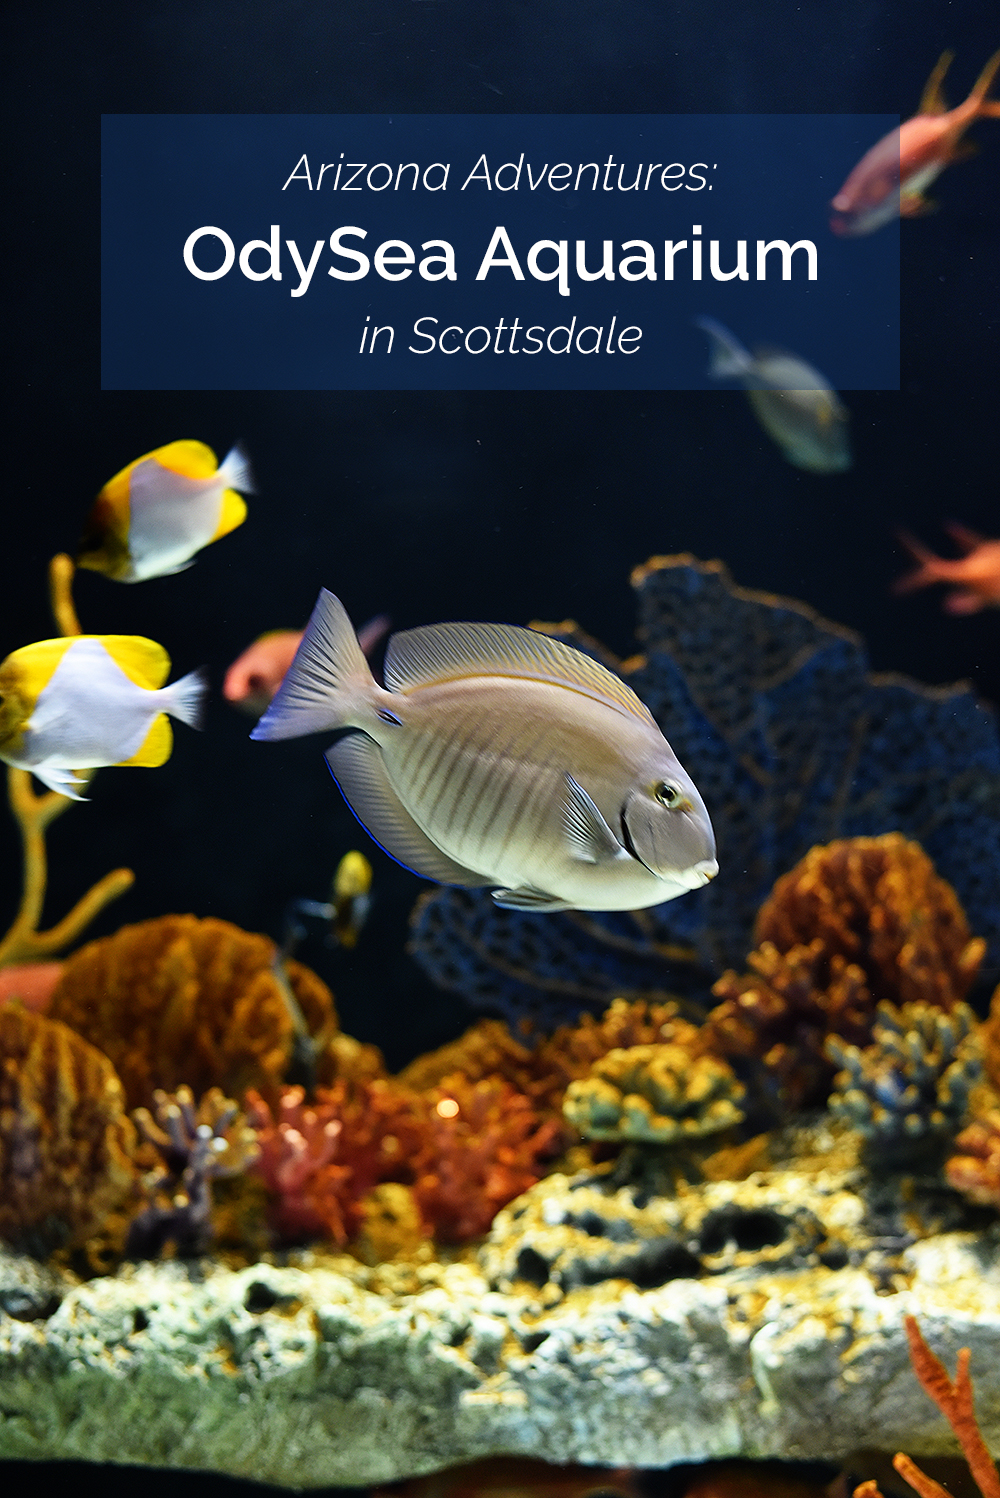 Arizona Adventures: OdySea Aquarium in Scottsdale